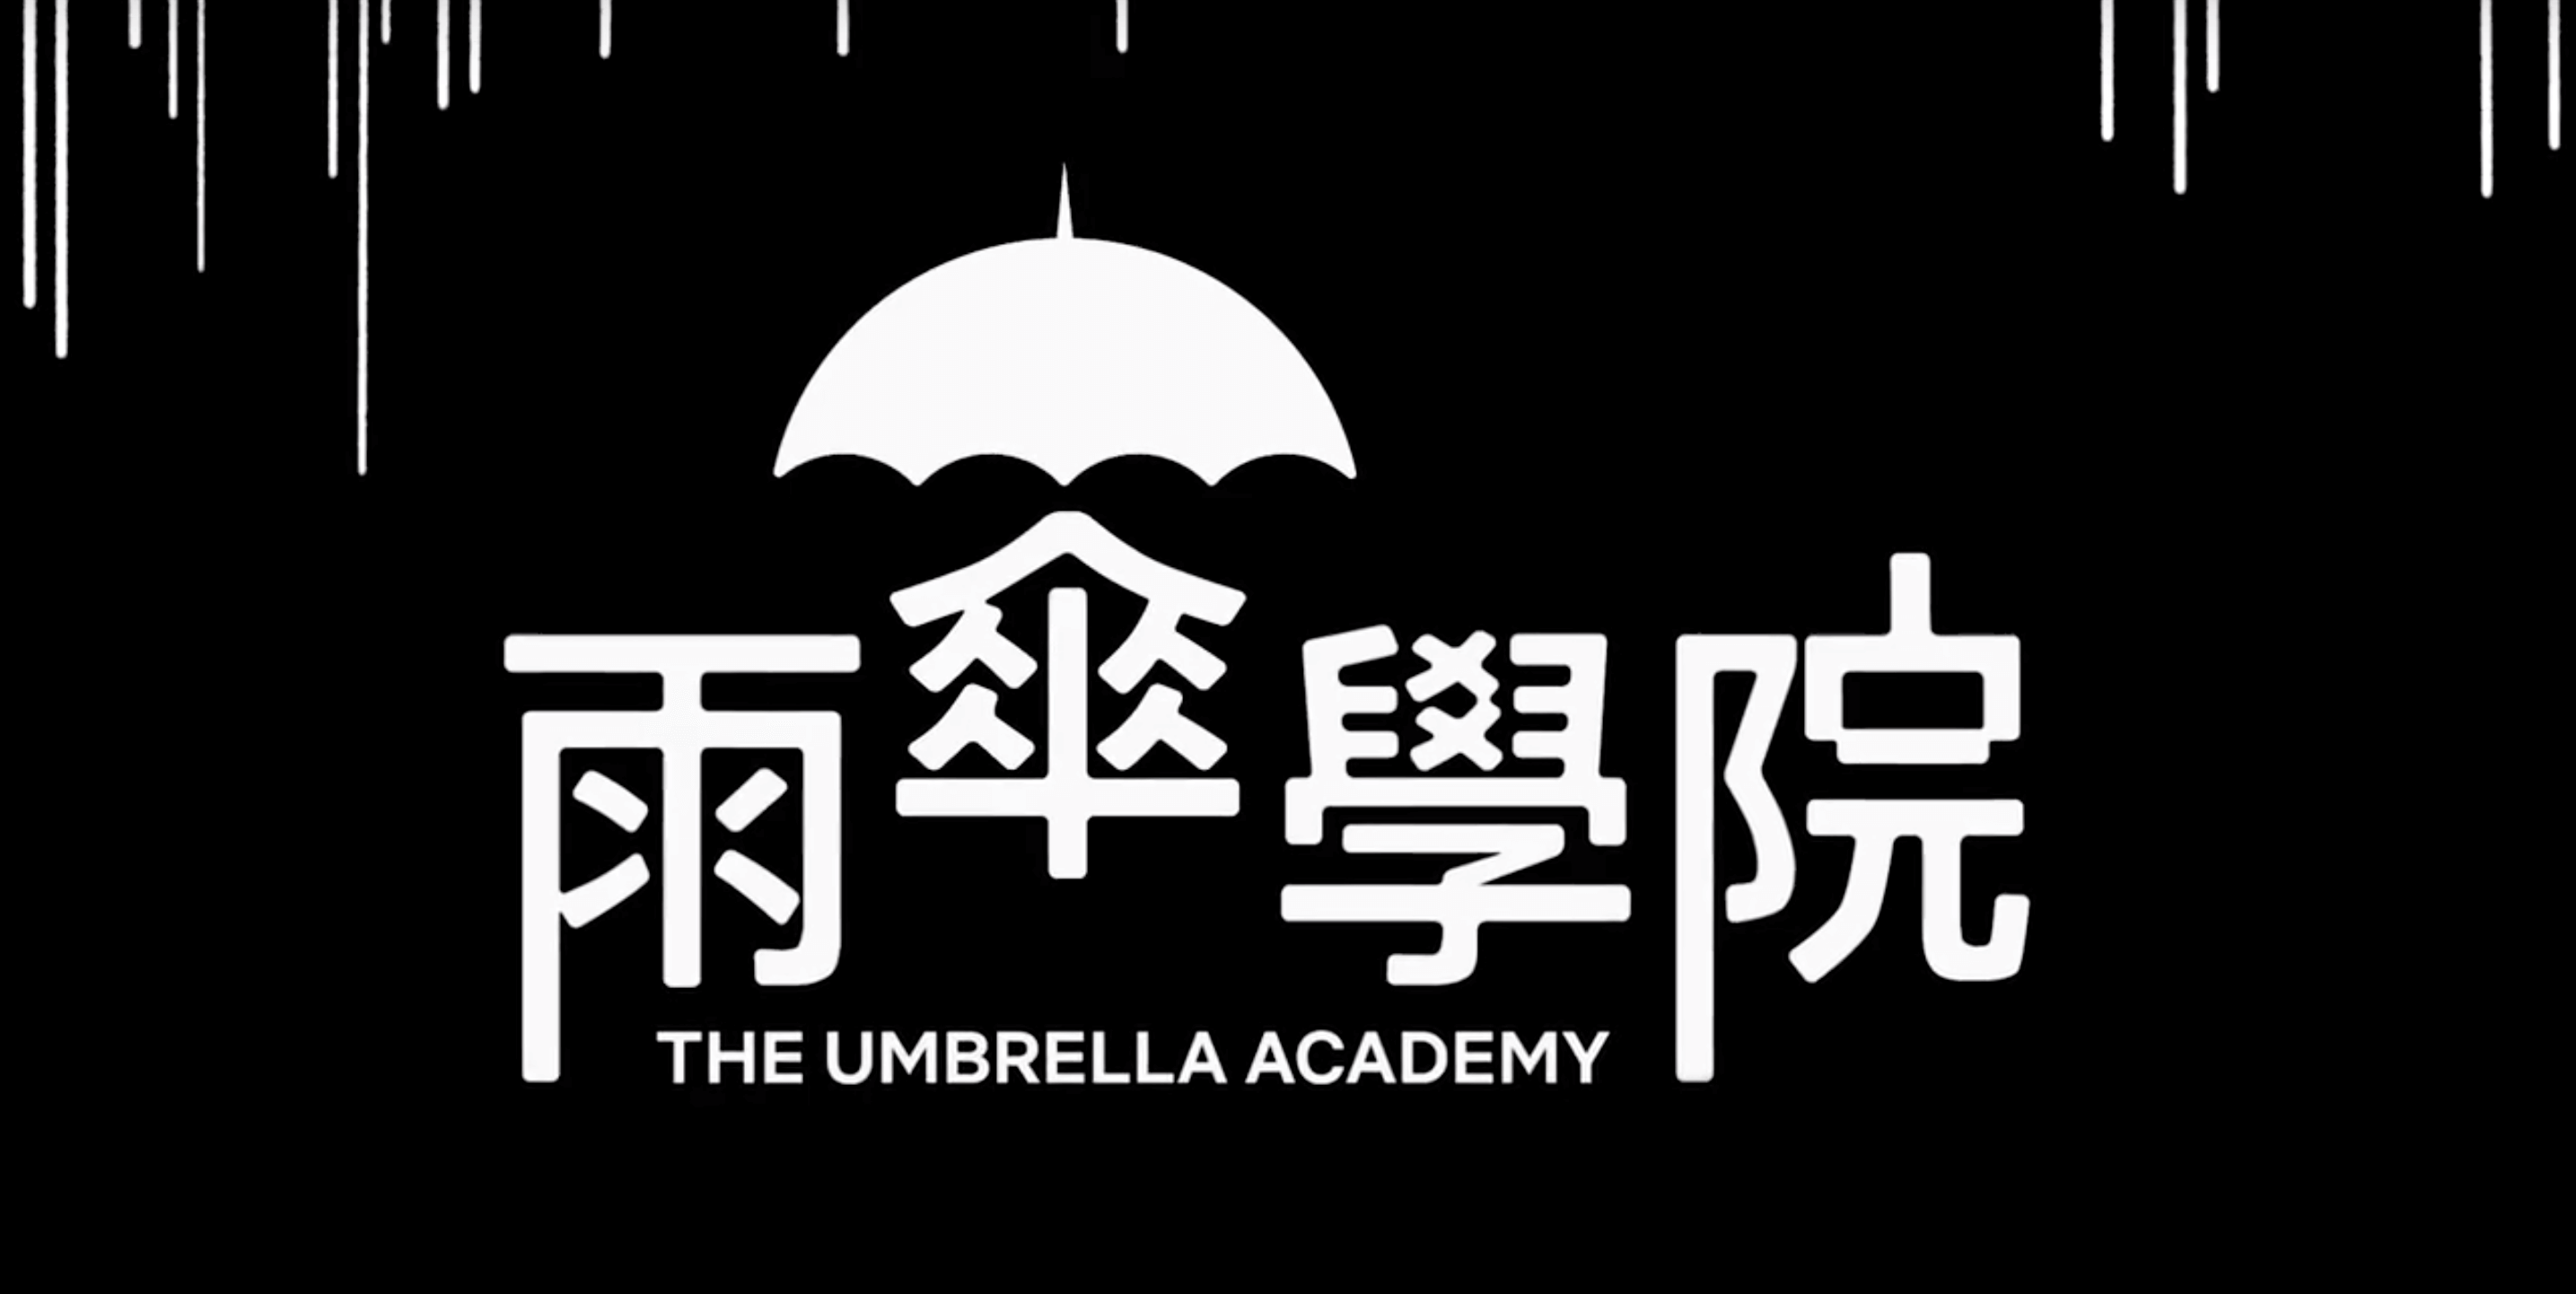 【Netflix】雨傘學院 The Umbrella Academy，影集無雷/有雷心得。